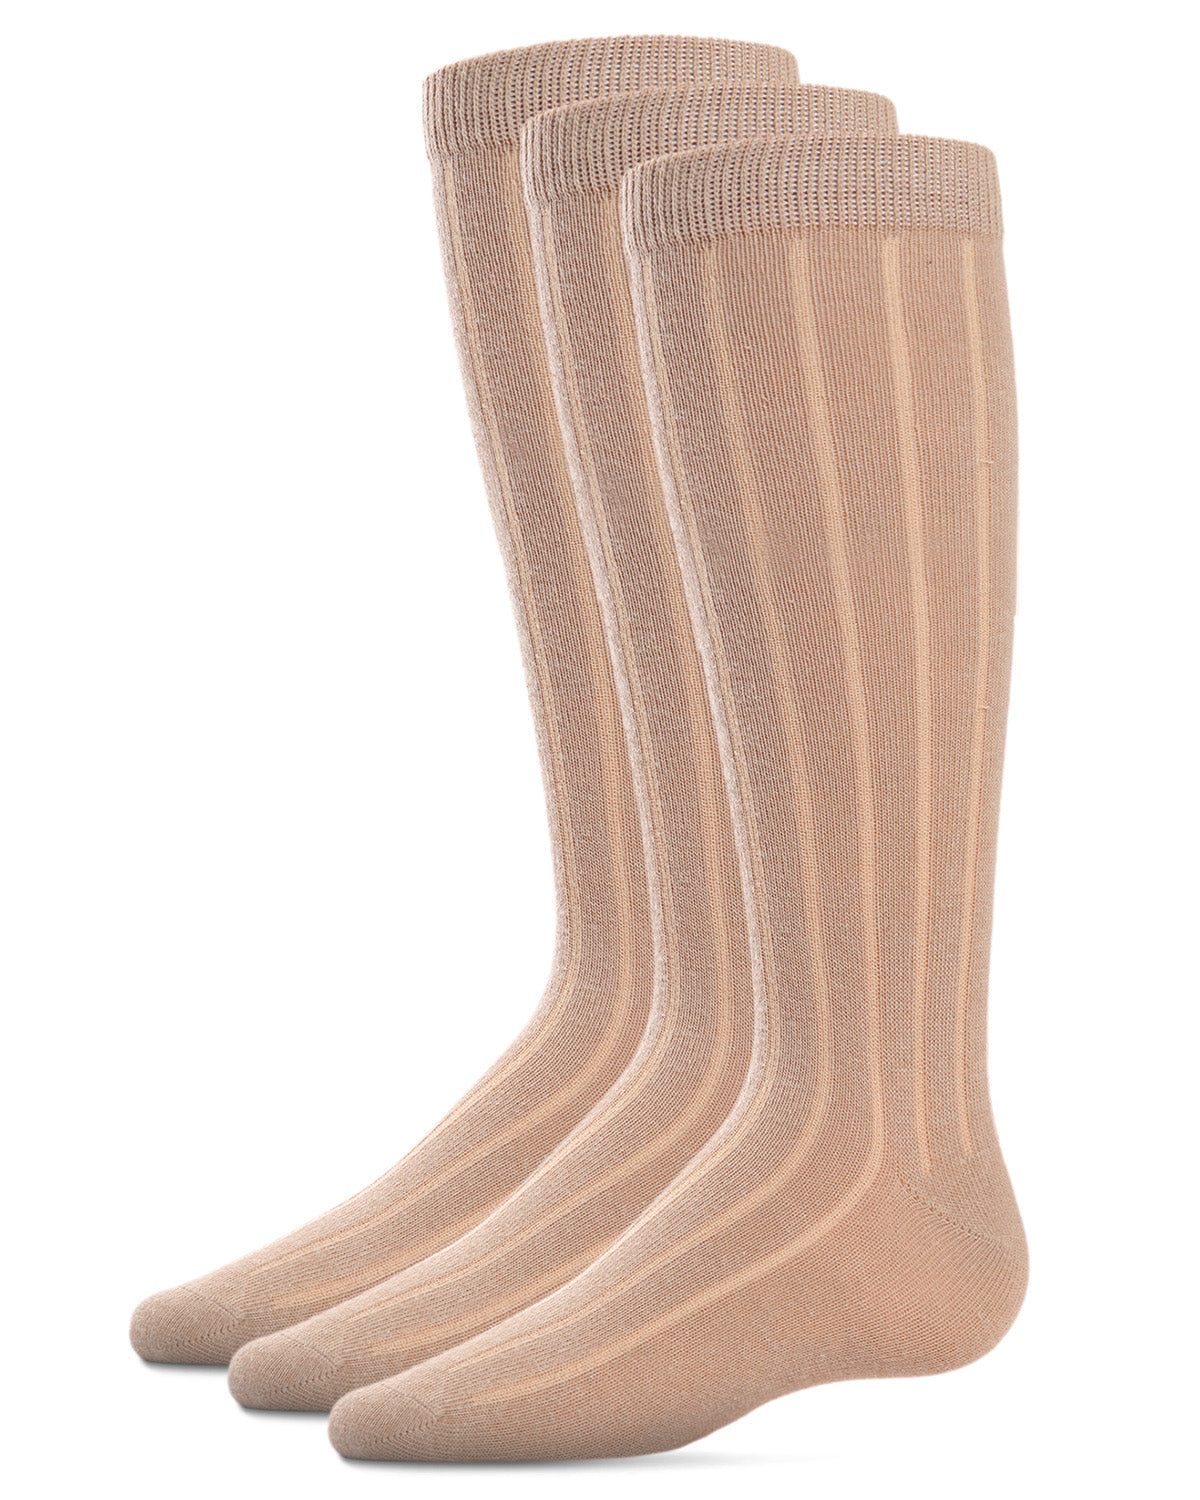 MeMoi Boys Cotton Dress Socks 3-Pack Navy 9-11 - image 3 of 7